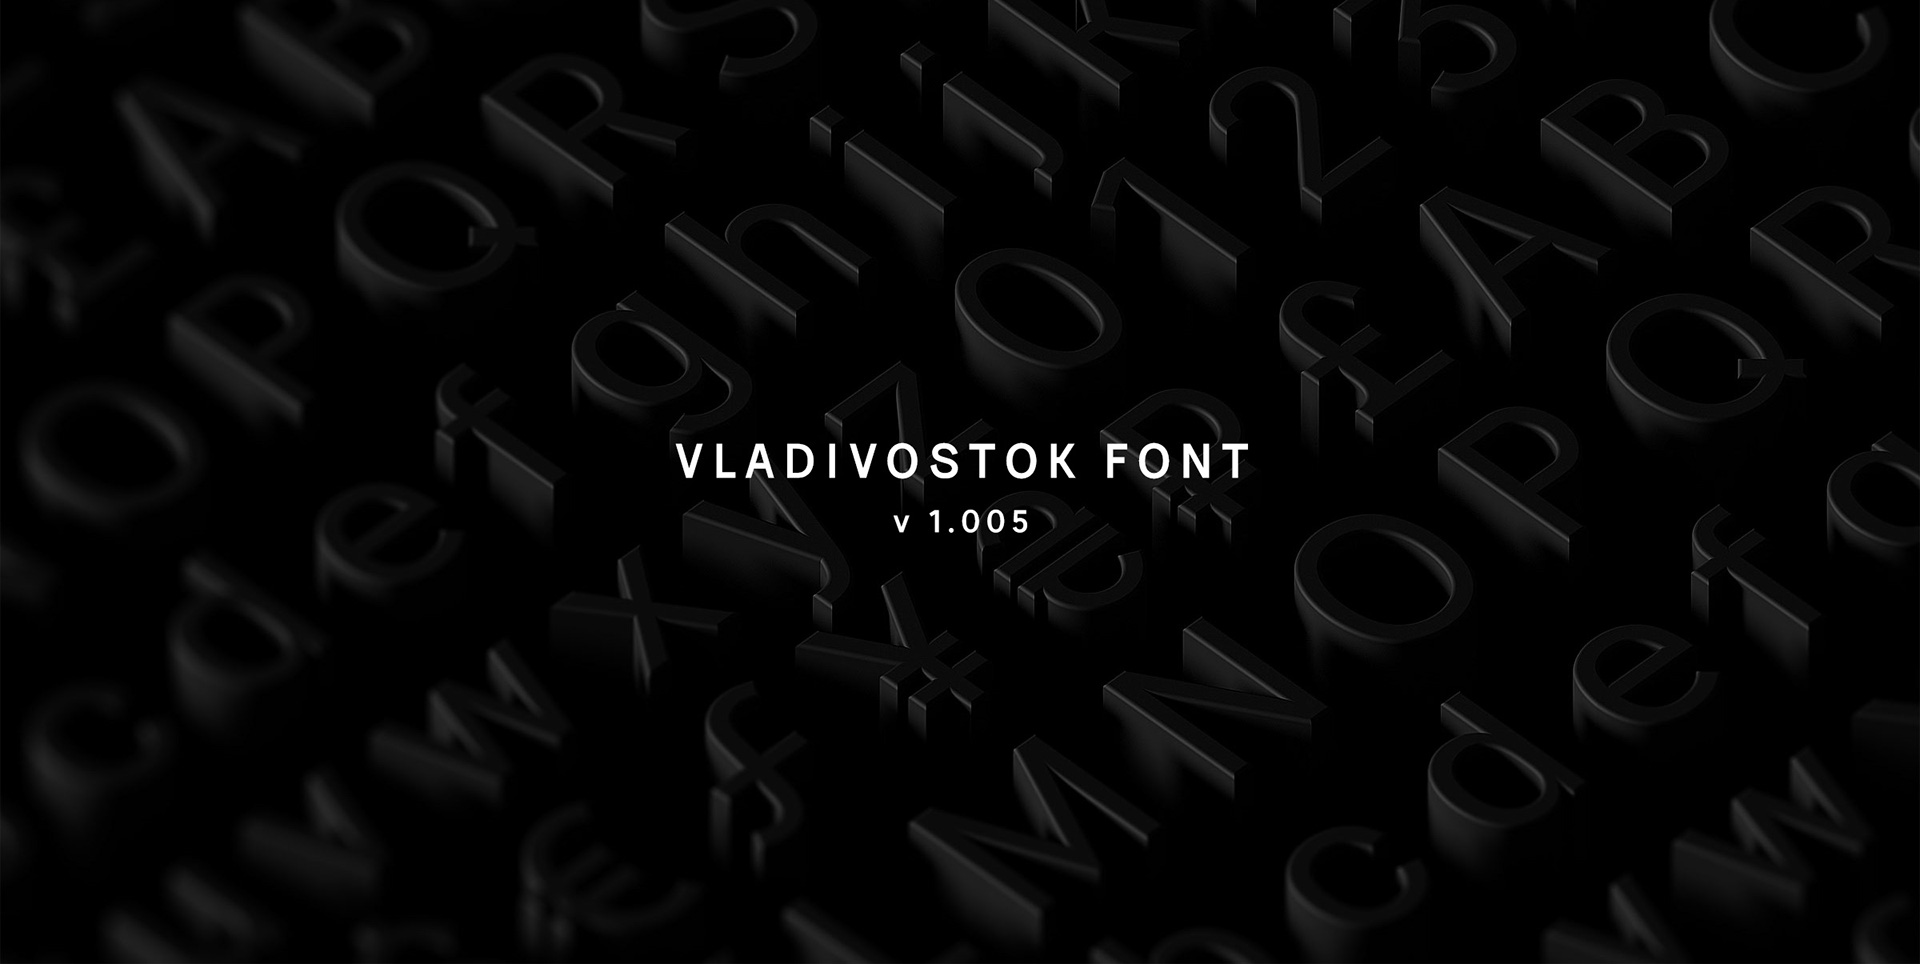 Beispiel einer Vladivostok-Schriftart